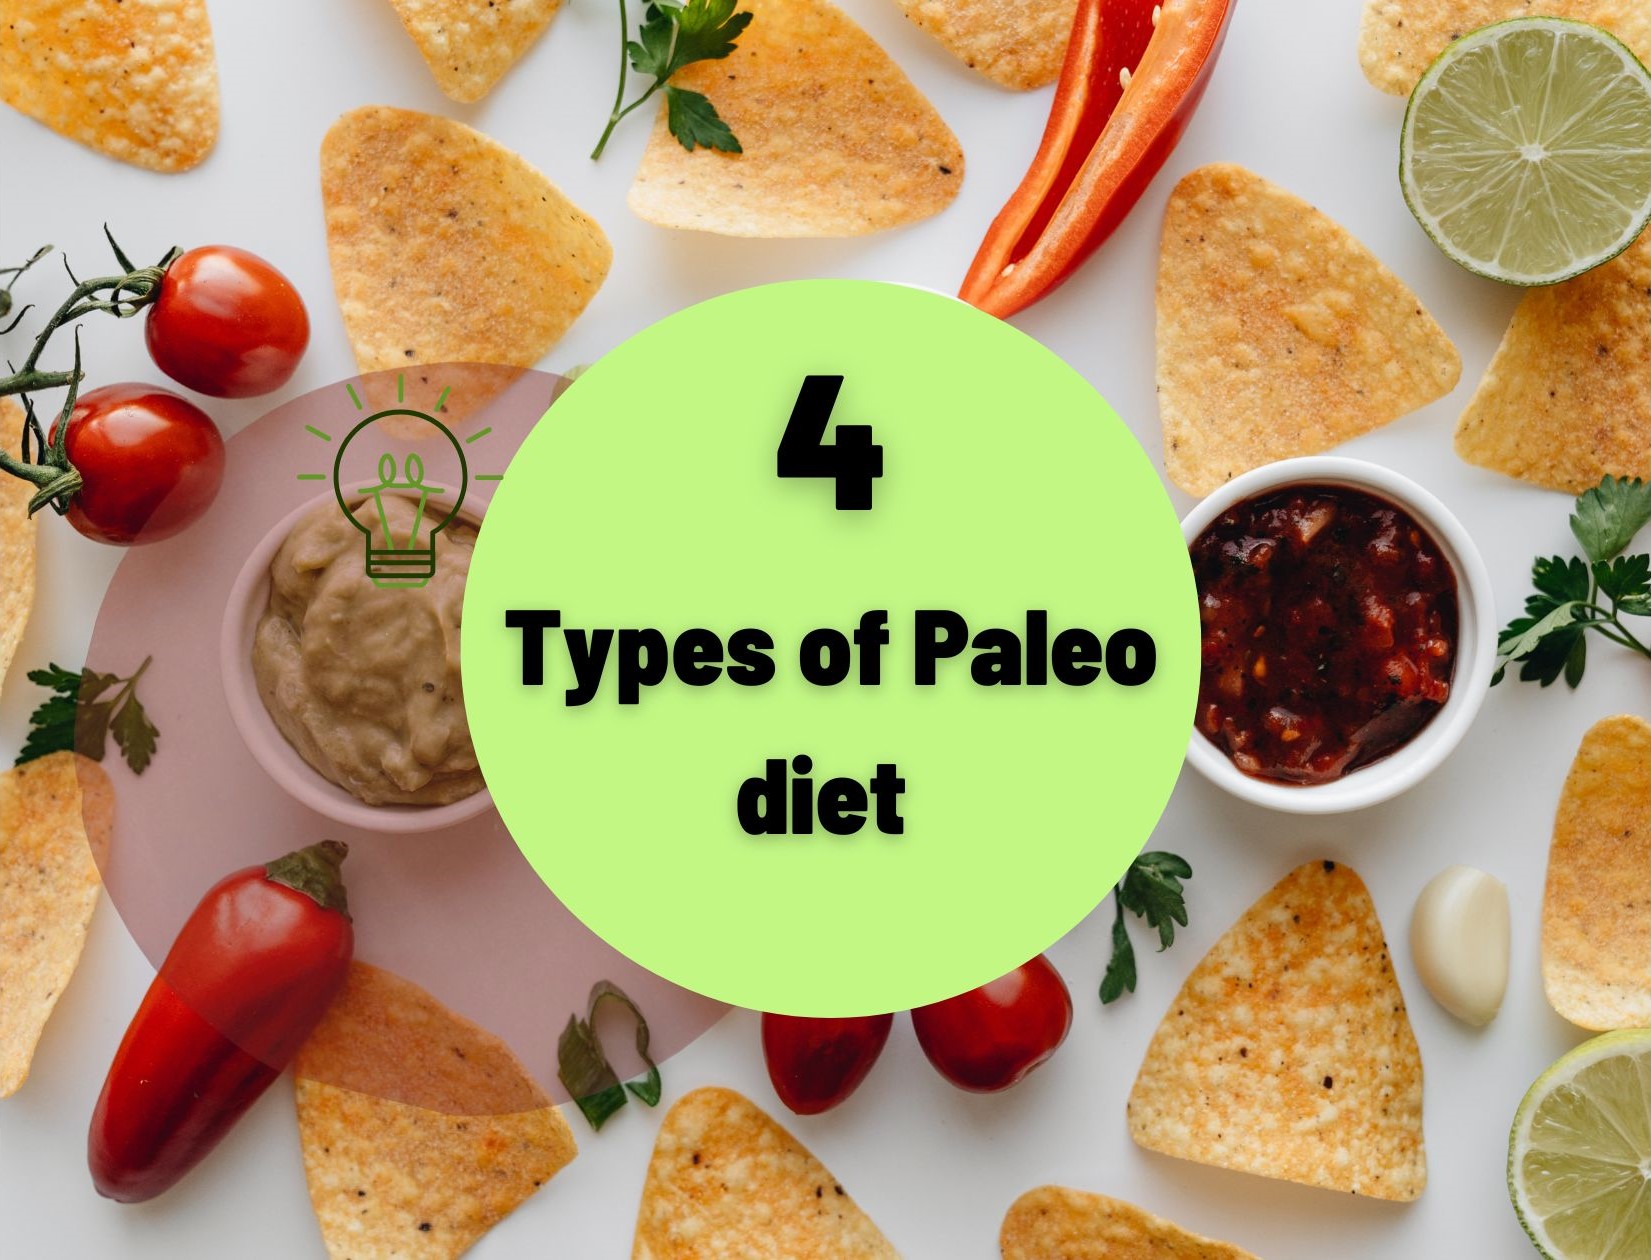 4 Types of Paleo diet